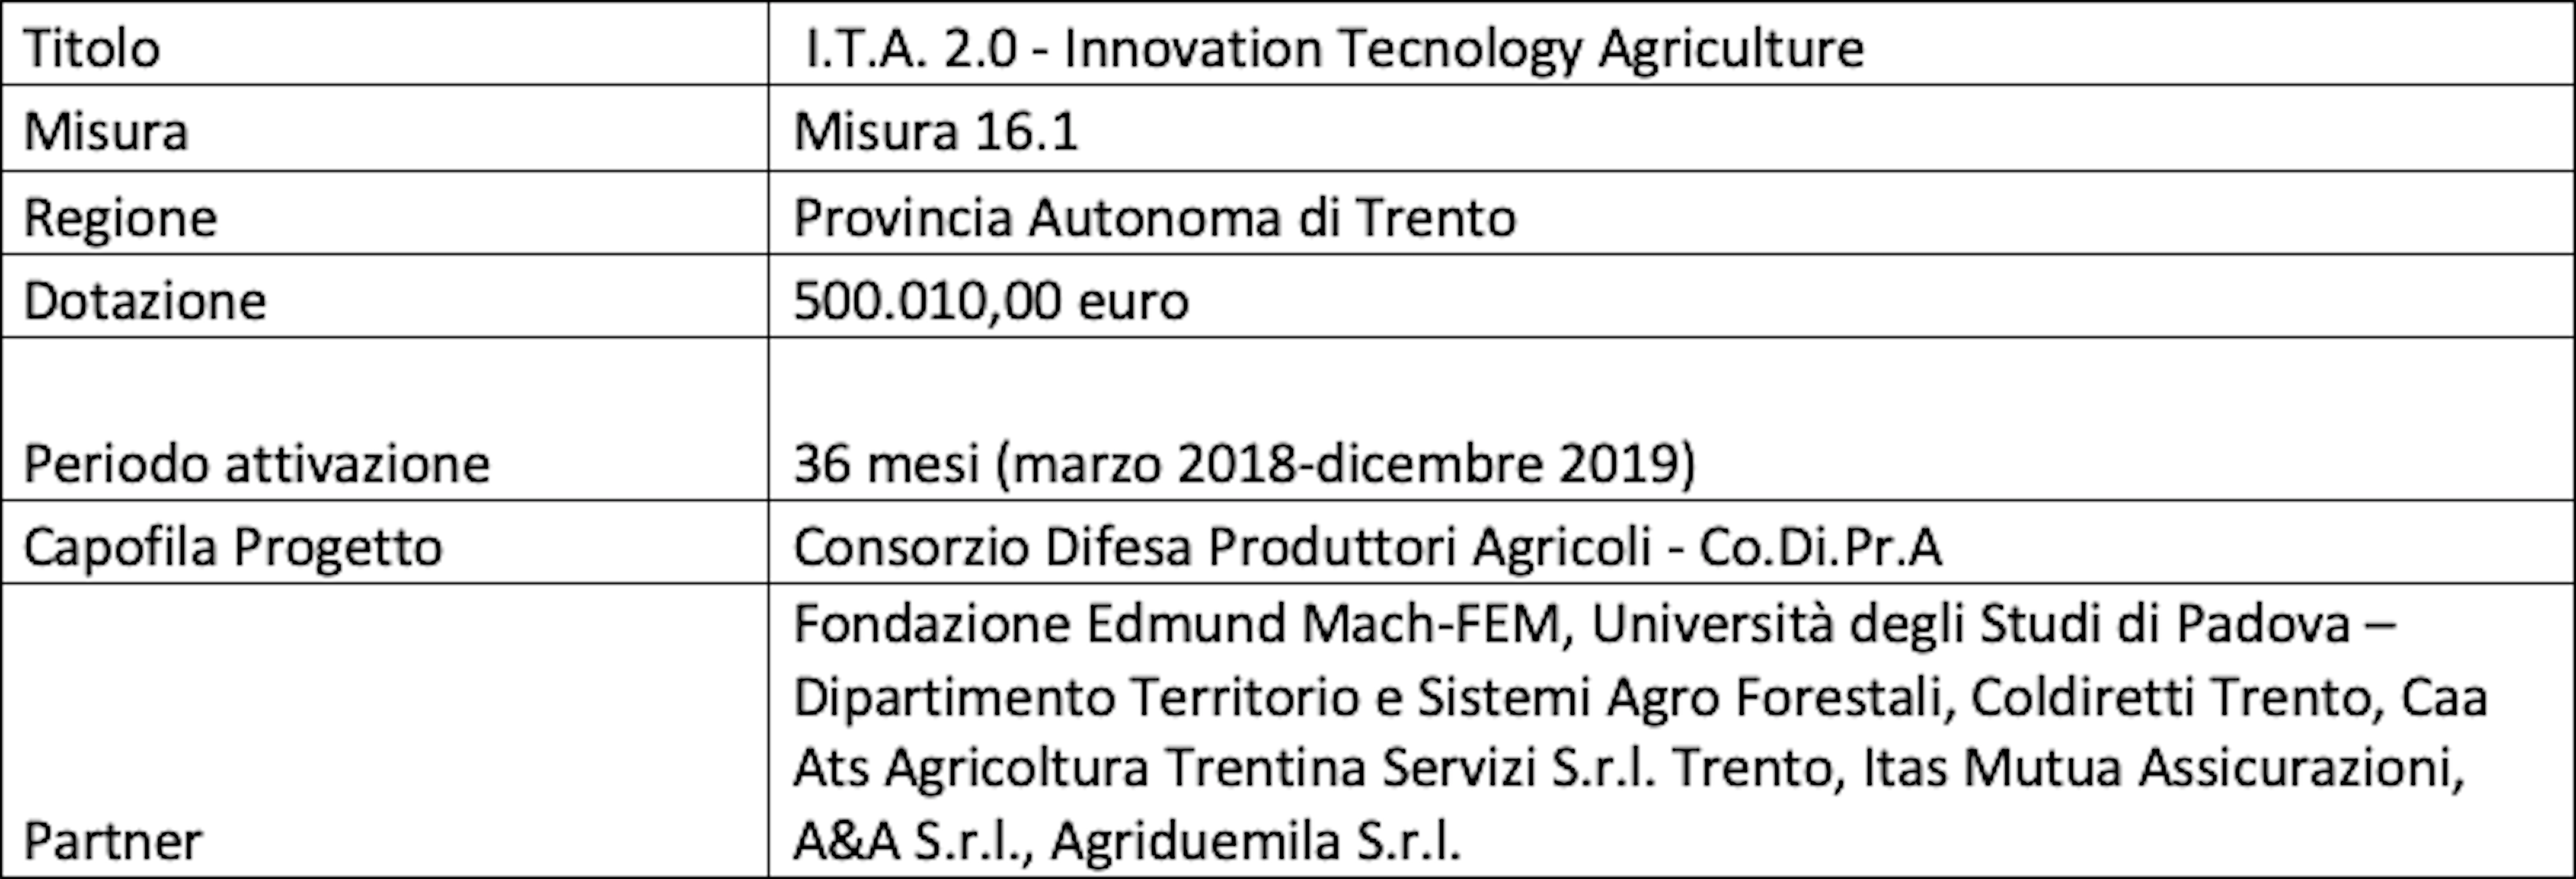 tabella-490-ita-innovation-tecnology-agriculture-psr-misura-16-innovazione-rubrica-magda-schiff-gennaio-2022-fonte-codipra copia.png